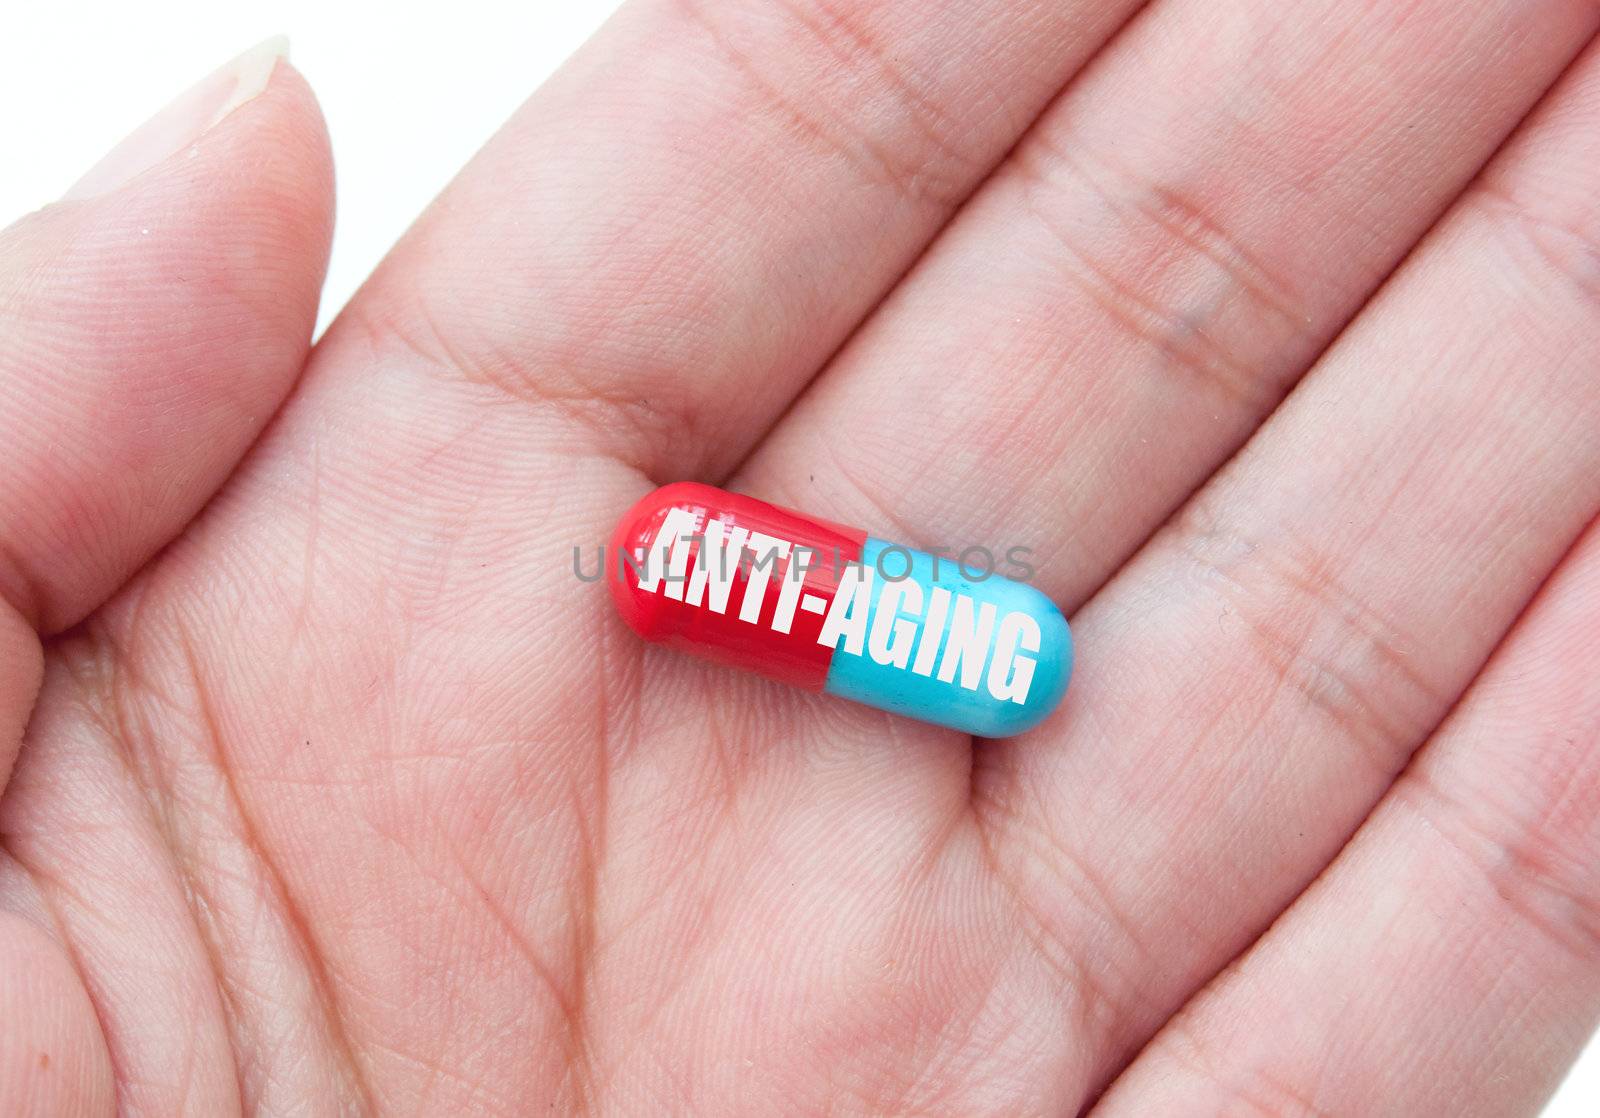 Anti-aging pill  by unikpix